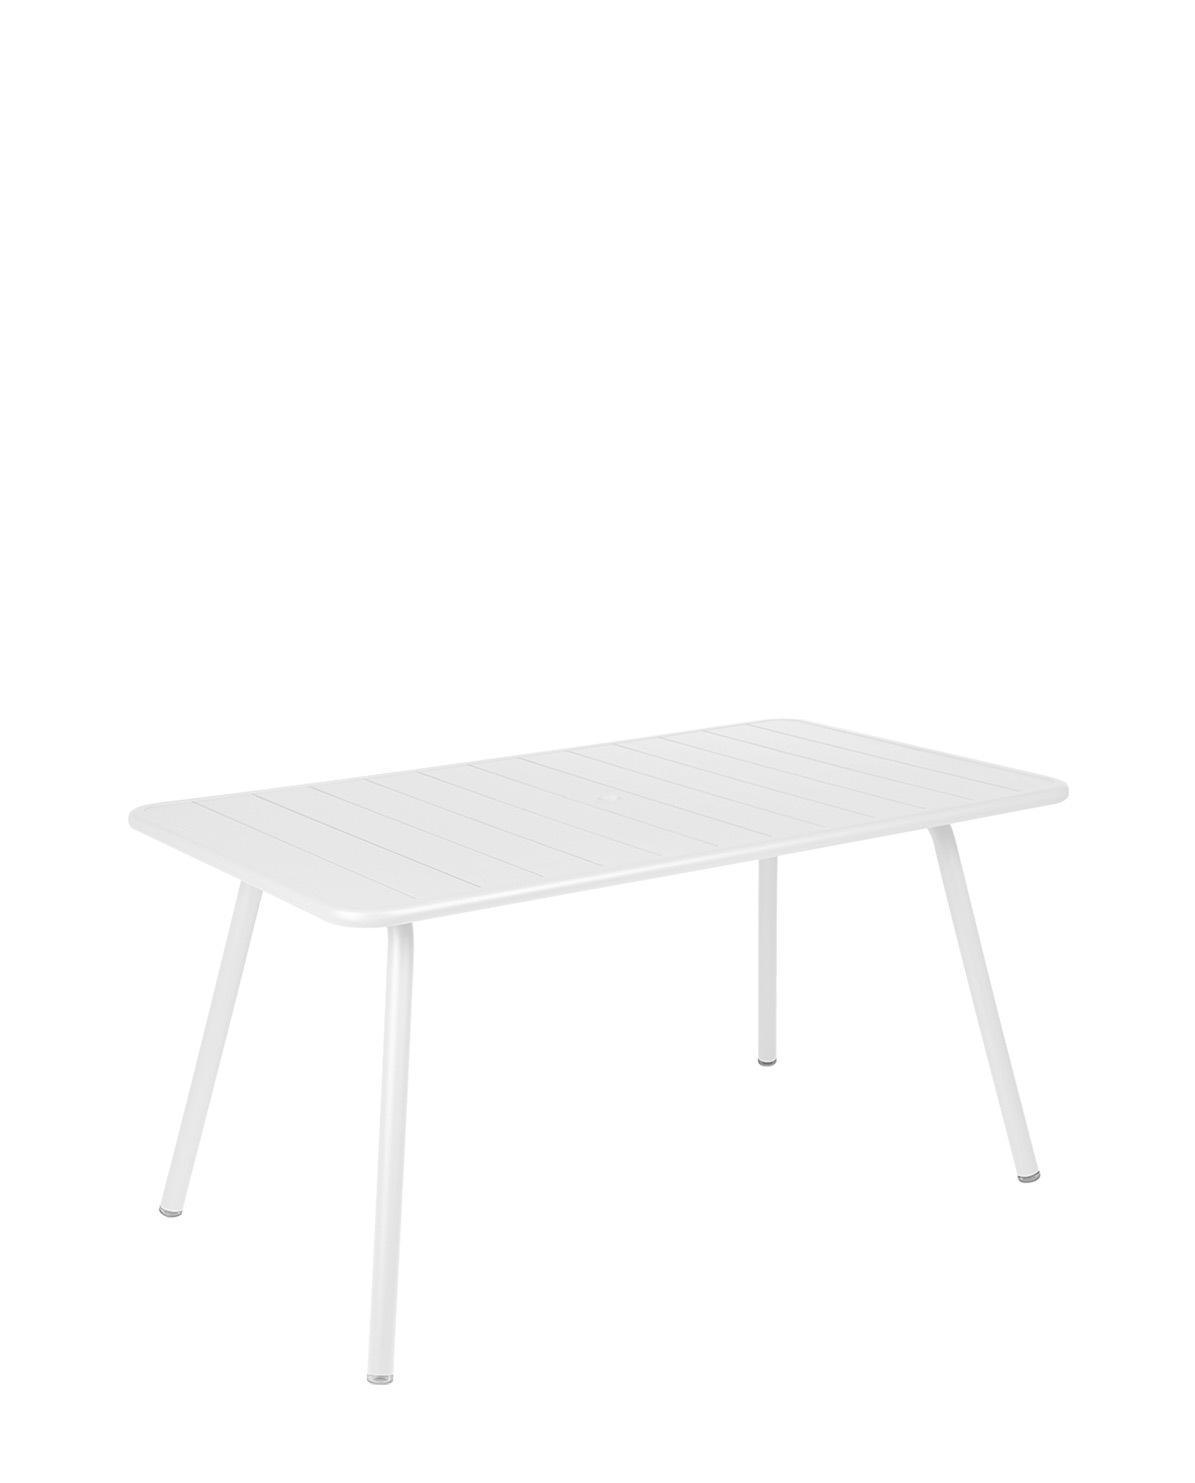 Tisch Luxembourg 143 cm x 80 cm